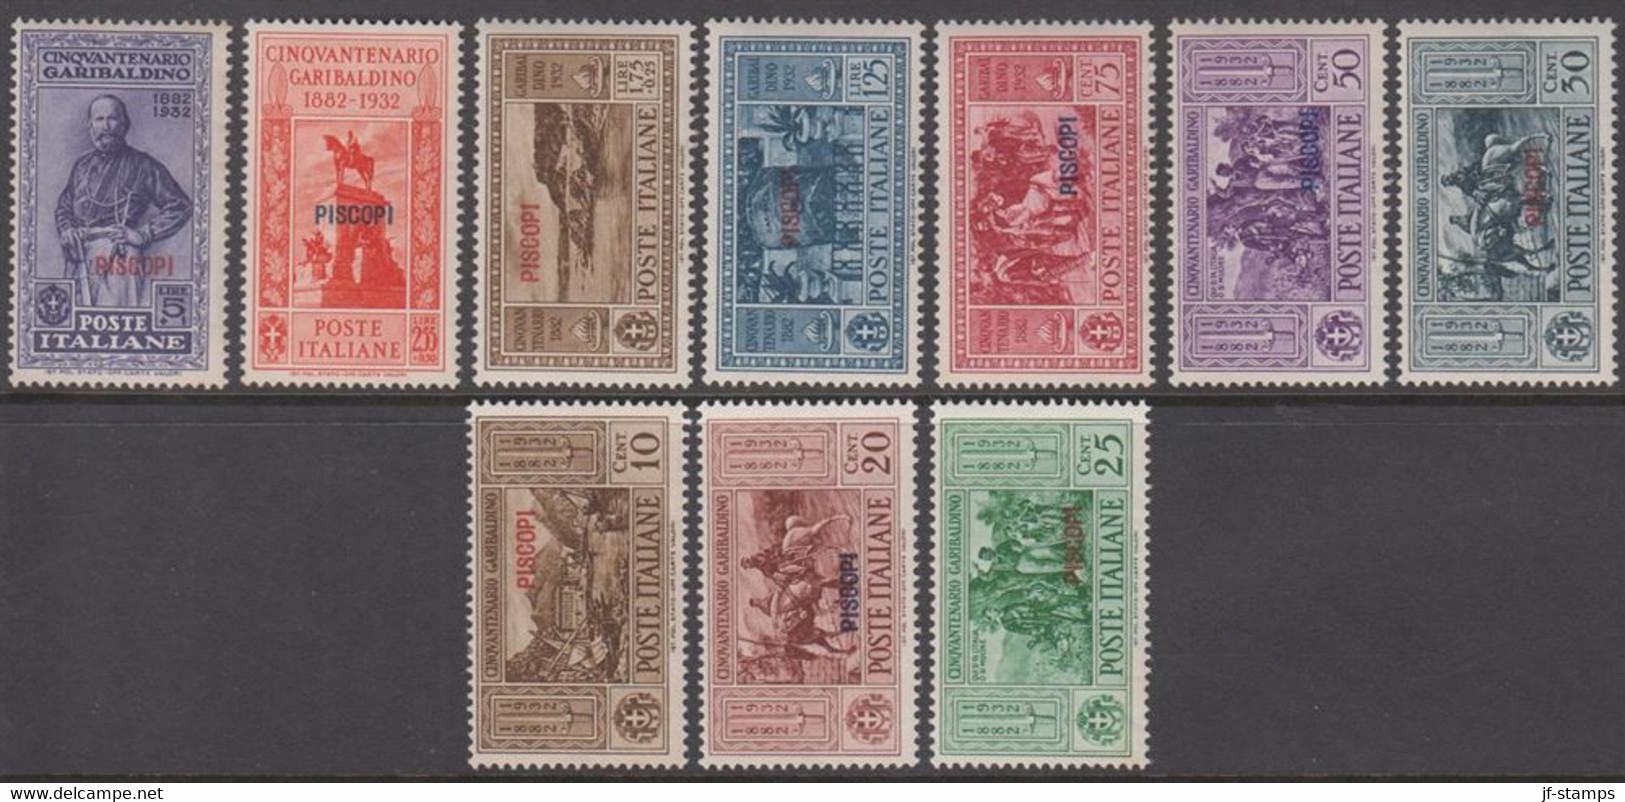 1932. Garibaldi. Complete Set With 10 Stamps. Overprinted PISCOPI.  (Michel 88-97 IX) - JF141037 - Aegean